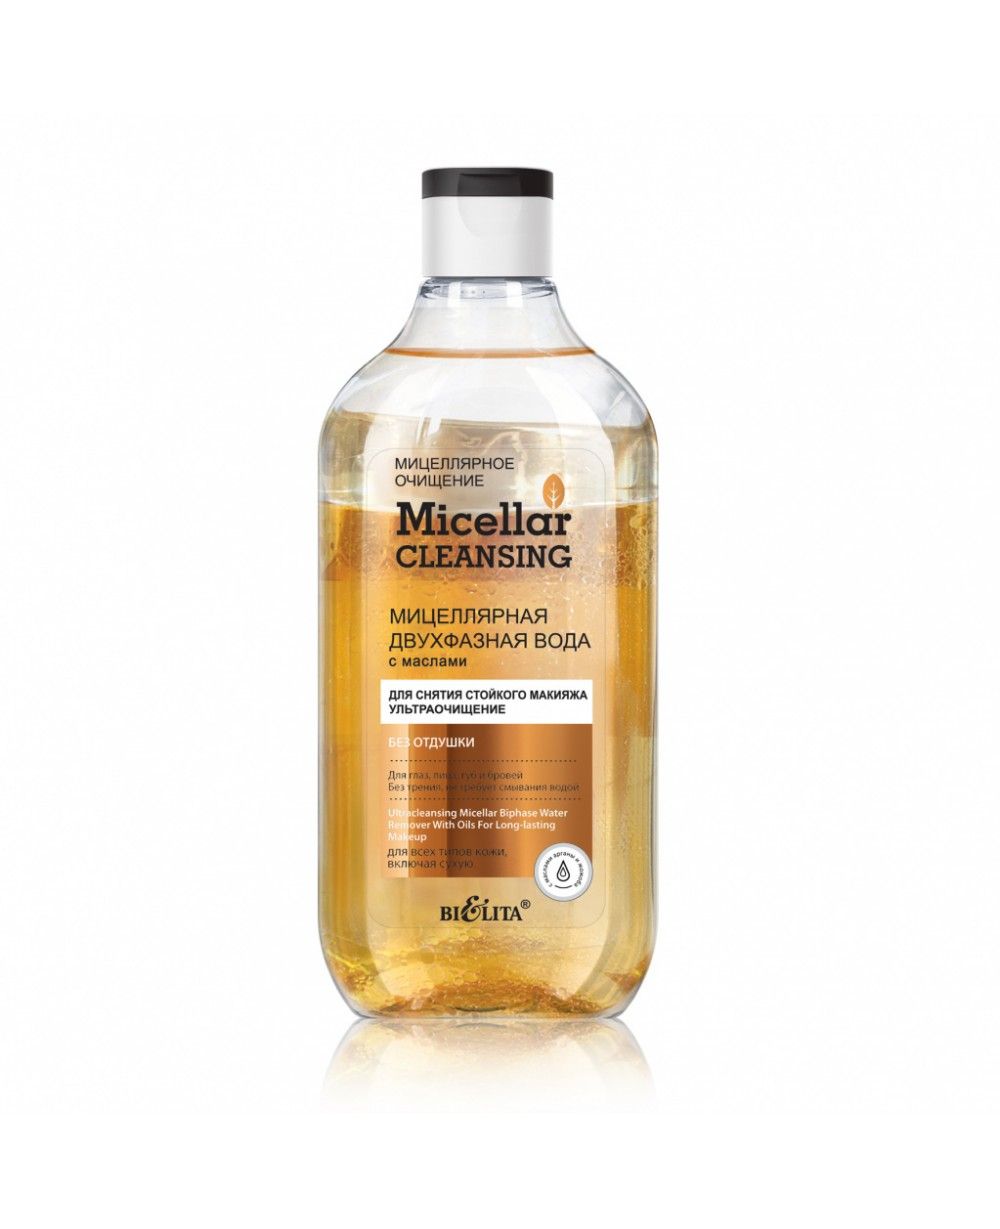 Micellar cleansing ВОДА Міцелярна двофазна з оліями для зняття стійкого макияжу Ультраочищення, 300 -ann_img